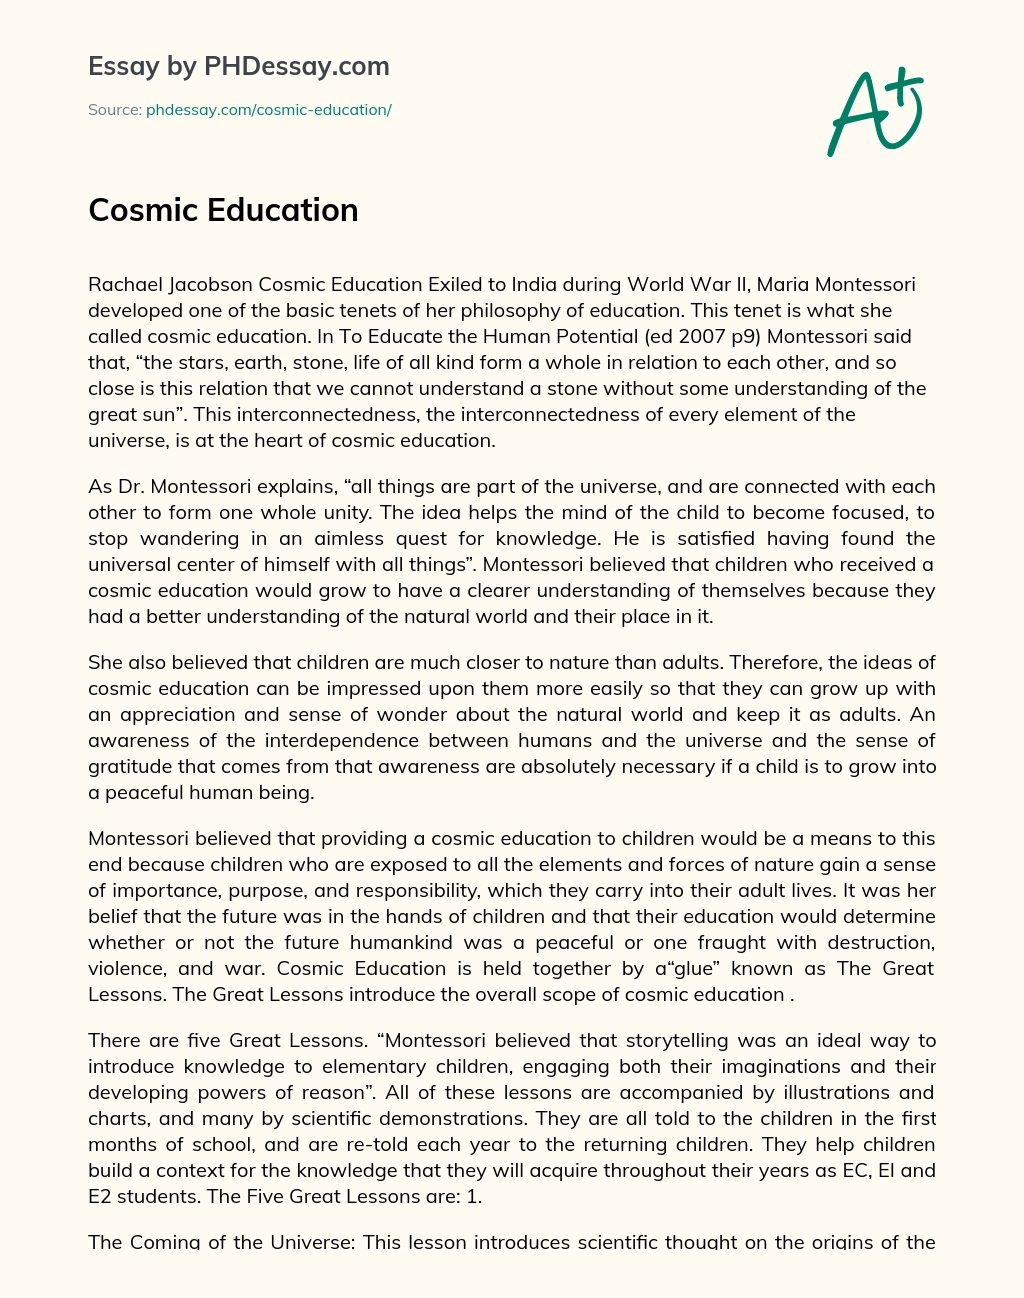 Cosmic Education of Maria Montessori essay